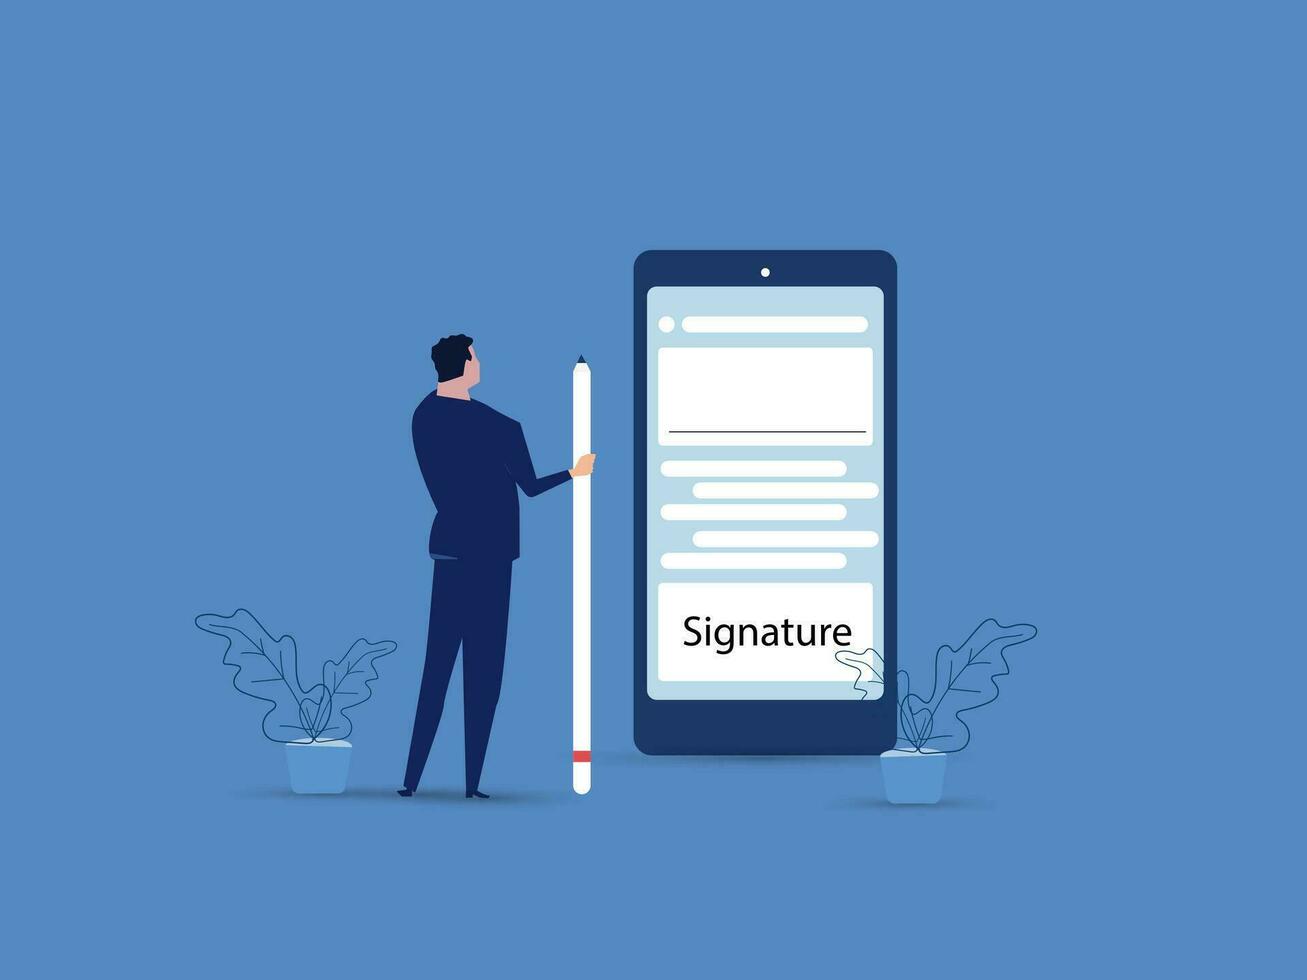 digital signatur begrepp. affärsman signering på smartphone skärm, signering av kontrakt på digital, e-signatur, företag eller elektronisk avtal. vektor illustration.